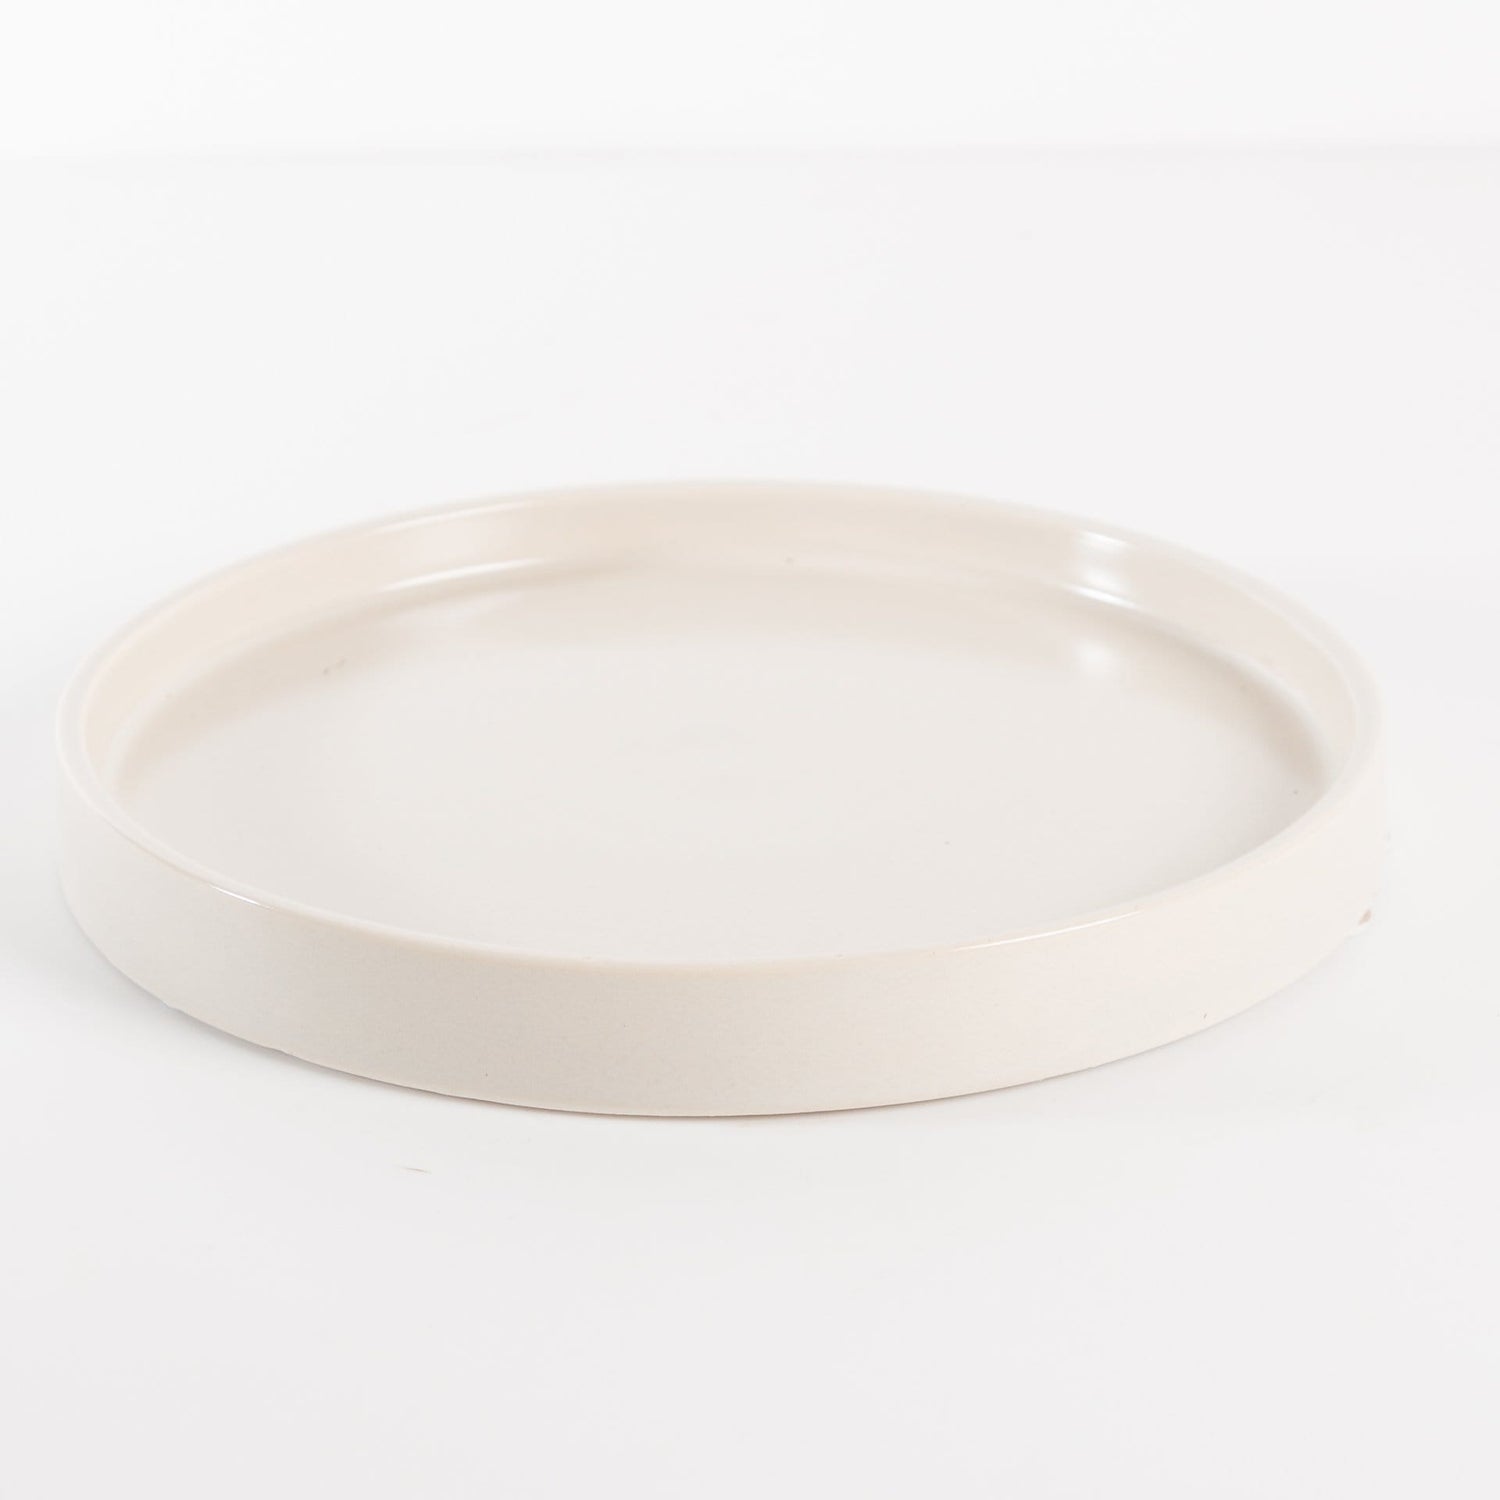 Washington Pottery Company Saucer 7.25" / Cream Essential Saucer